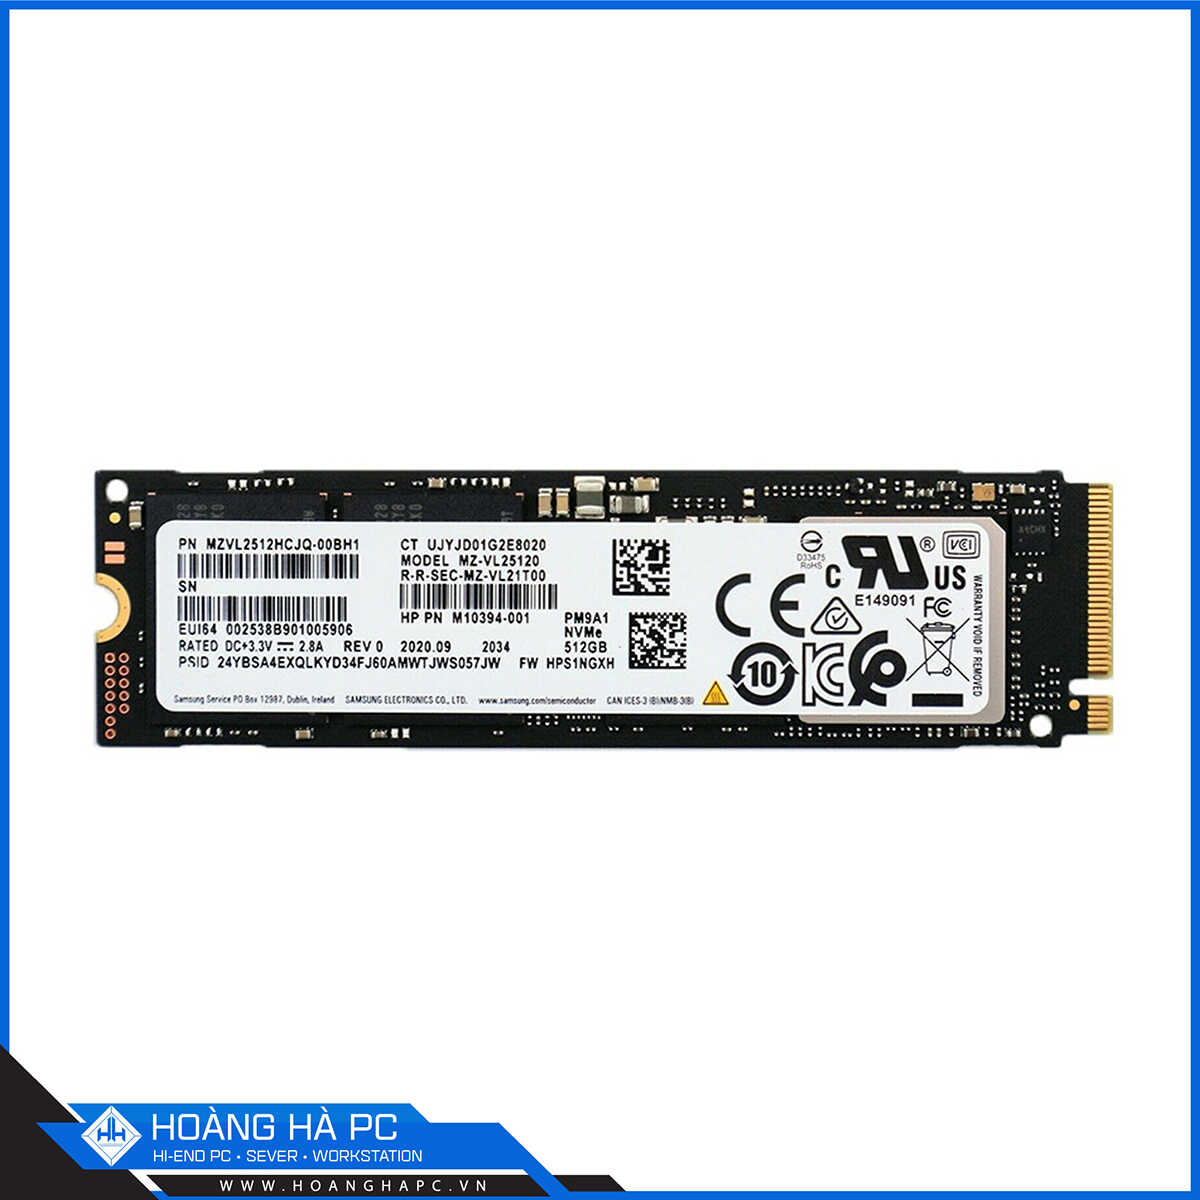 Ổ cứng SSD Samsung PM9A1 512GB M.2 NVMe PCIe Gen 4 x4 (Đọc 6900MB/s - Ghi 5000MB/s)